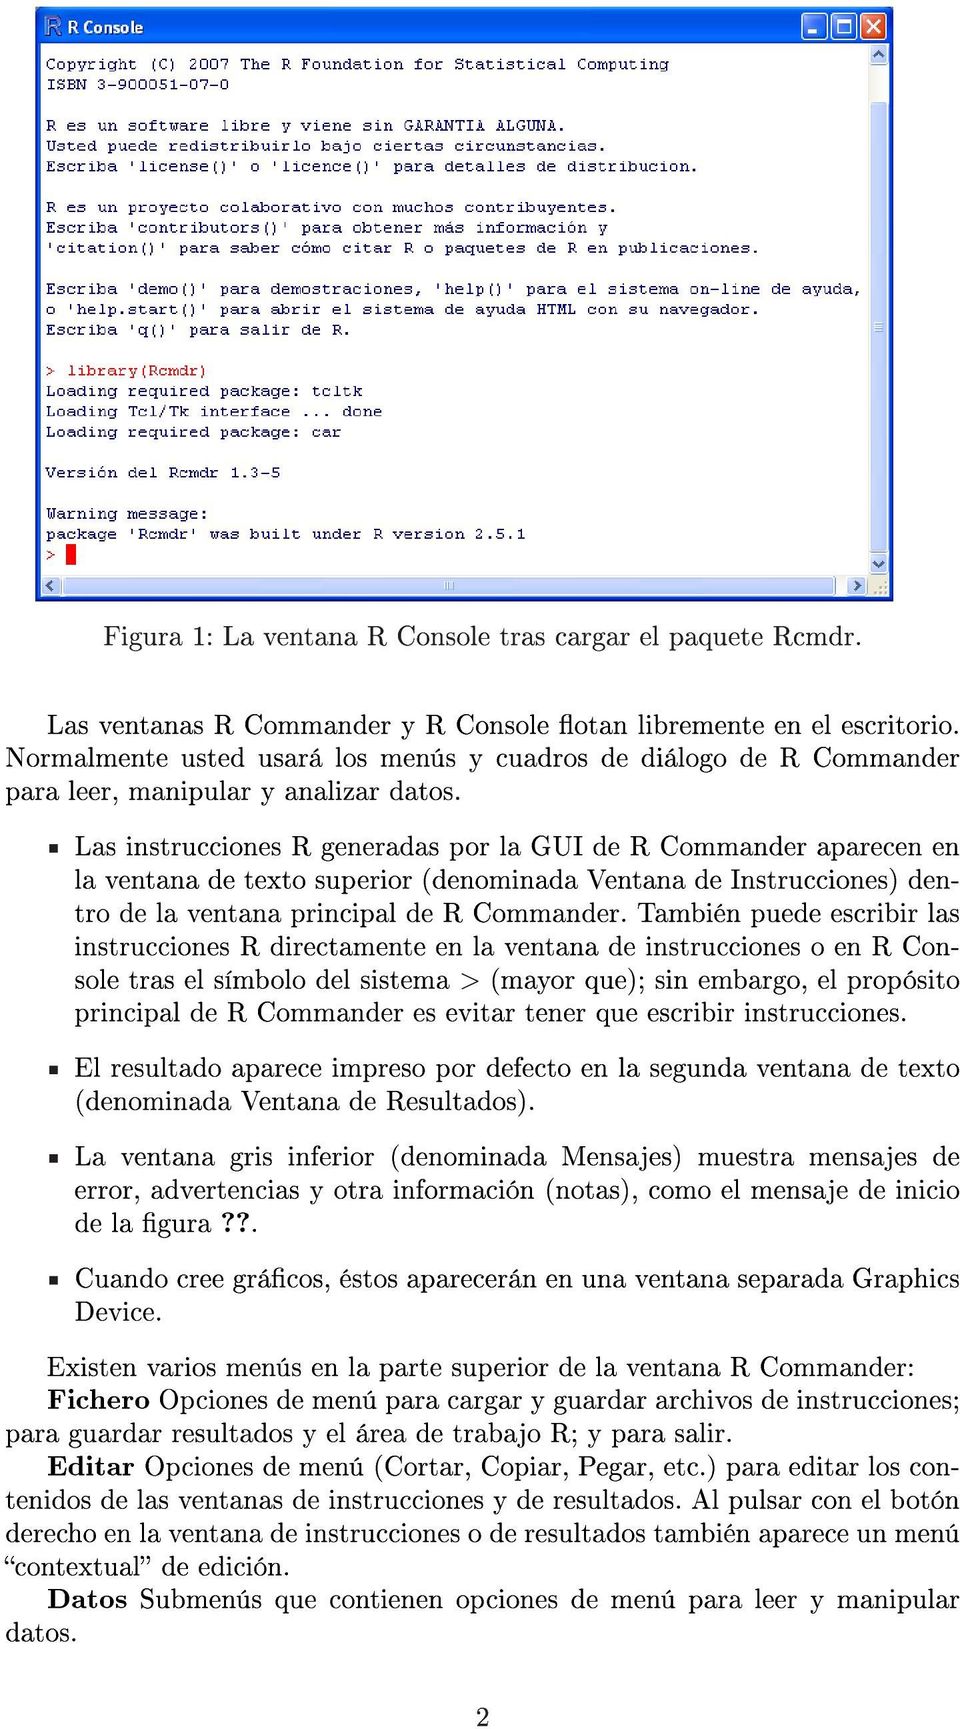 Las instrucciones R generadas por la GUI de R Commander aparecen en la ventana de texto superior (denominada Ventana de Instrucciones) dentro de la ventana principal de R Commander.